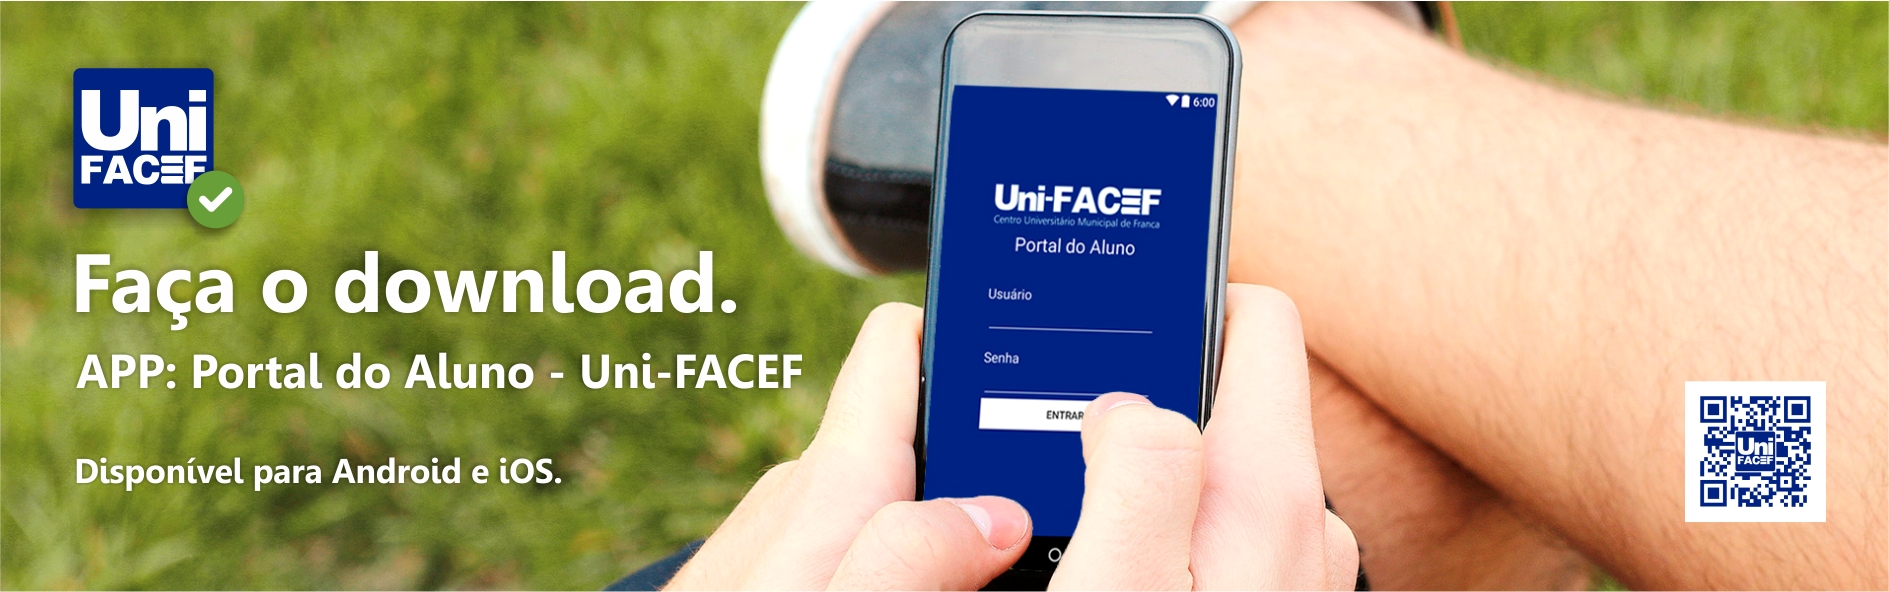 Aplicativo Uni-FACEF para Android e iOS